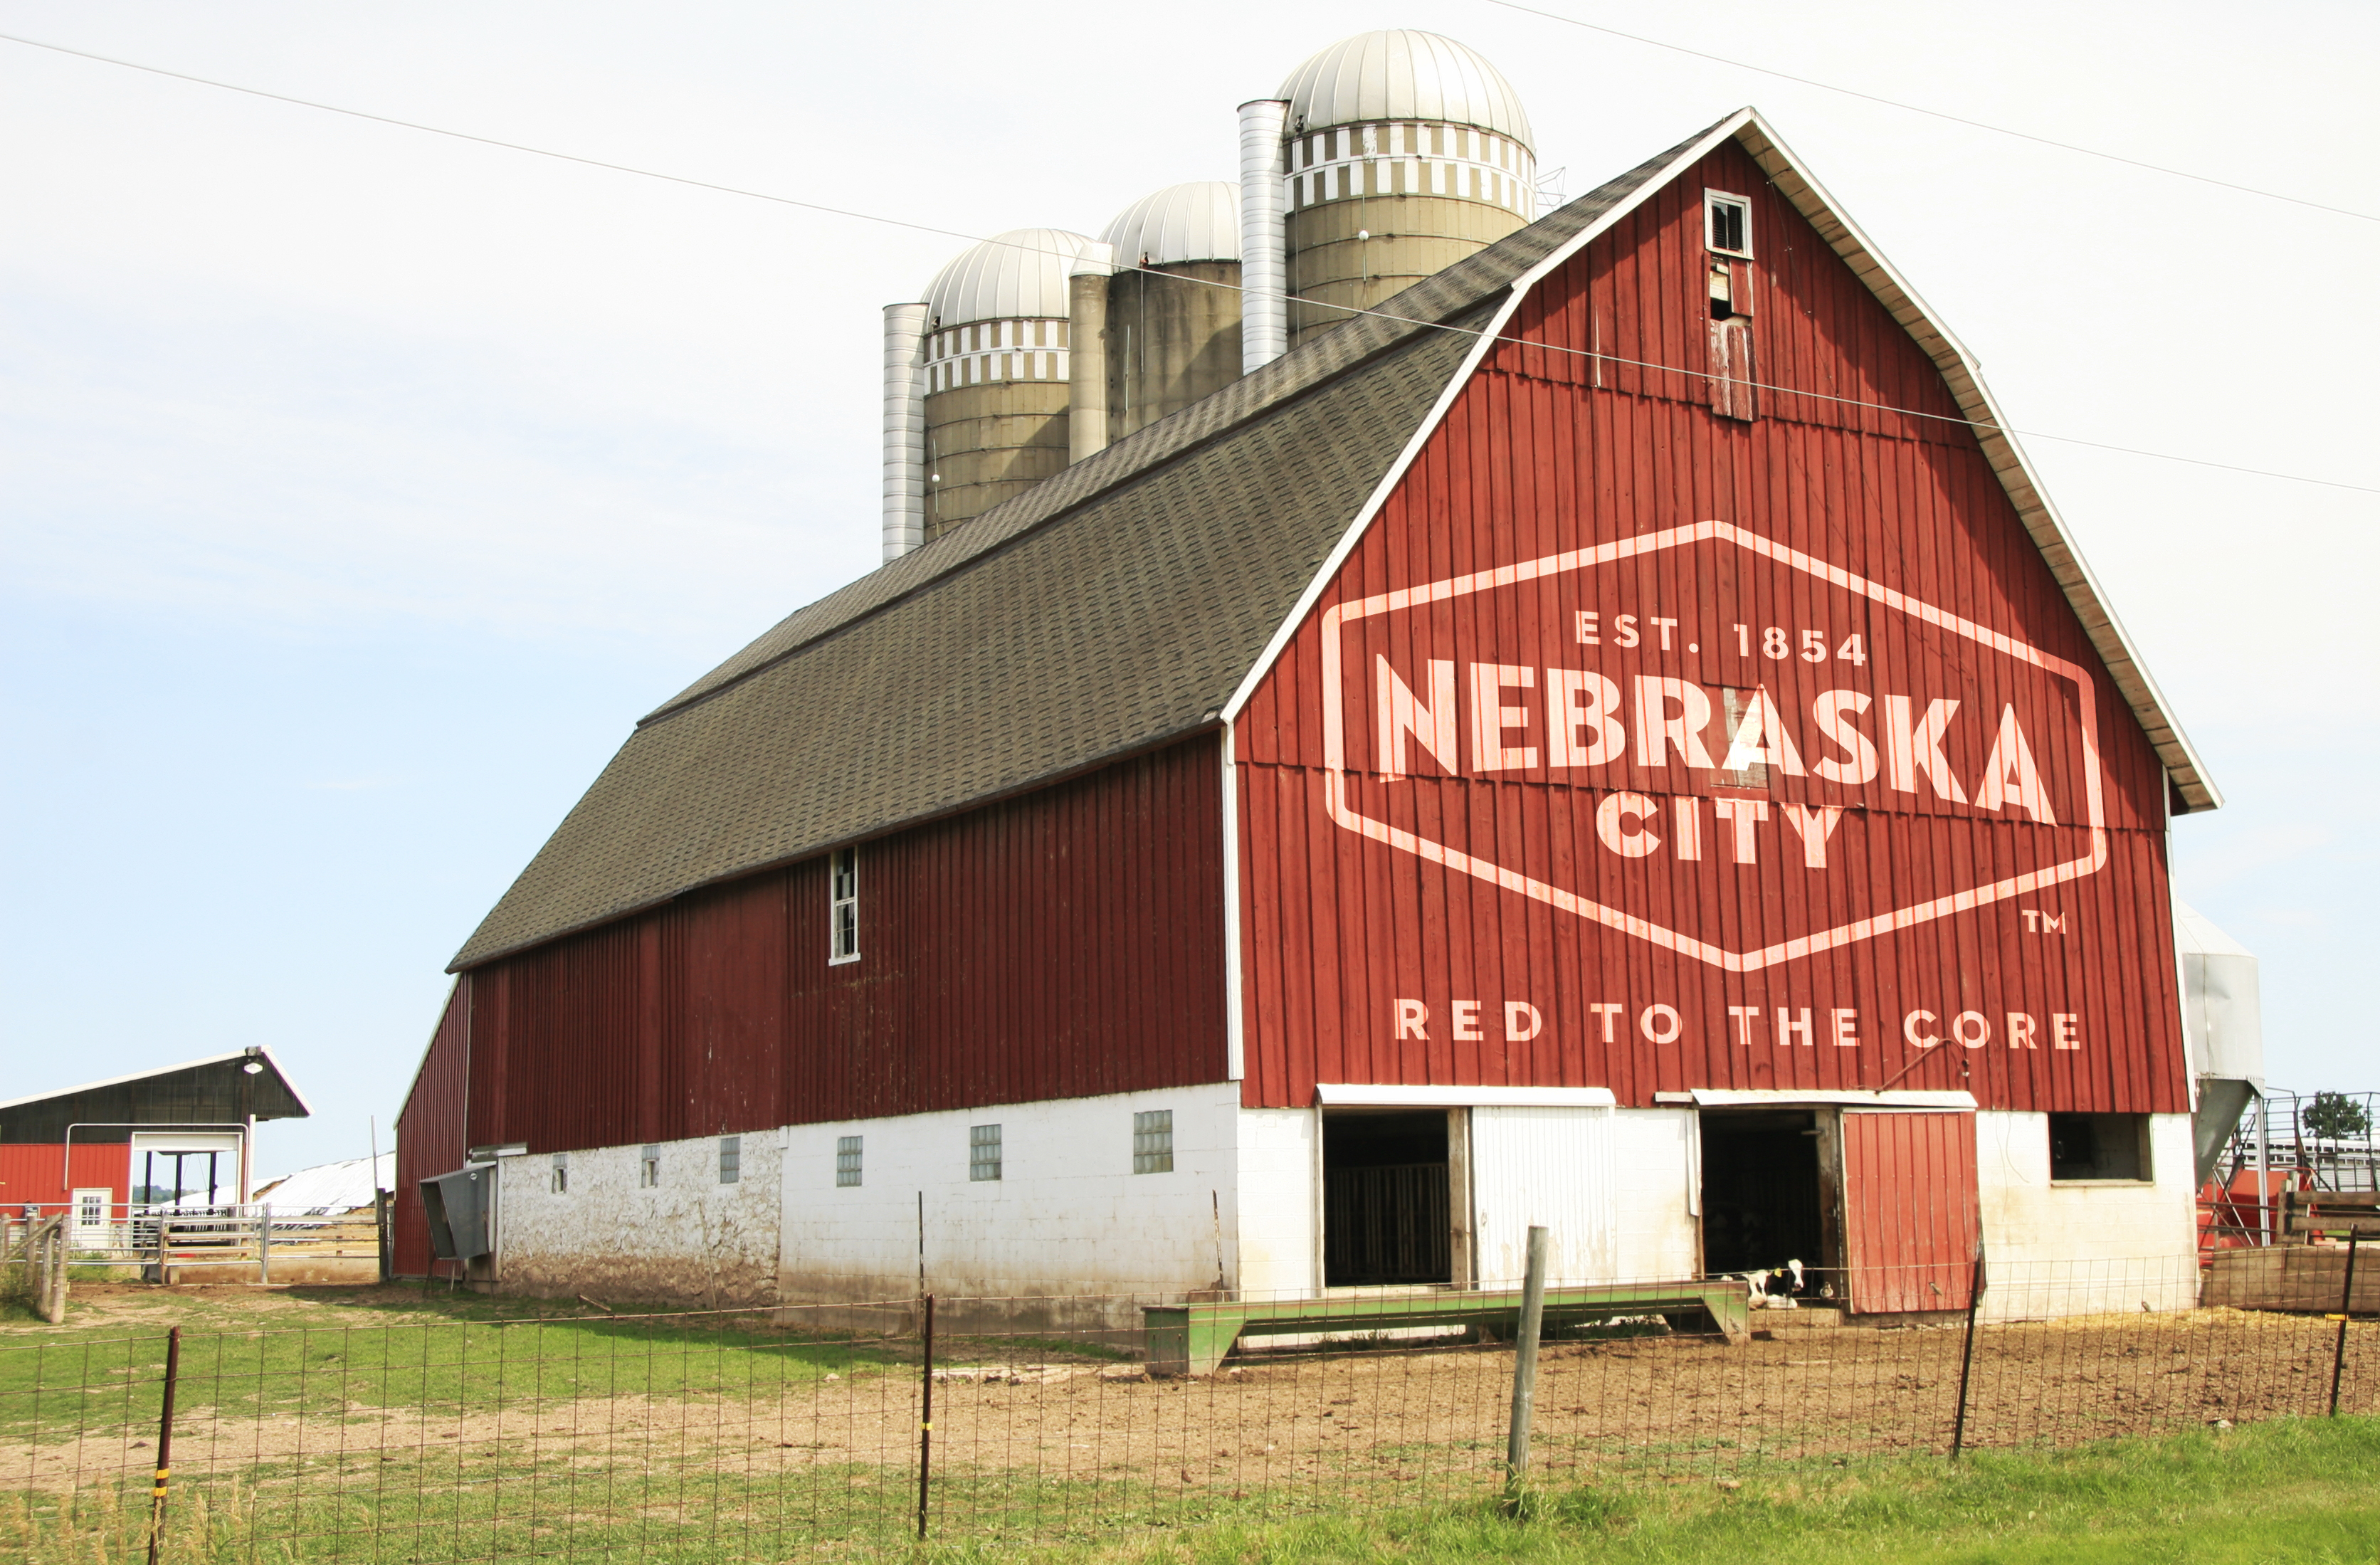 Nebraska City logo on barn